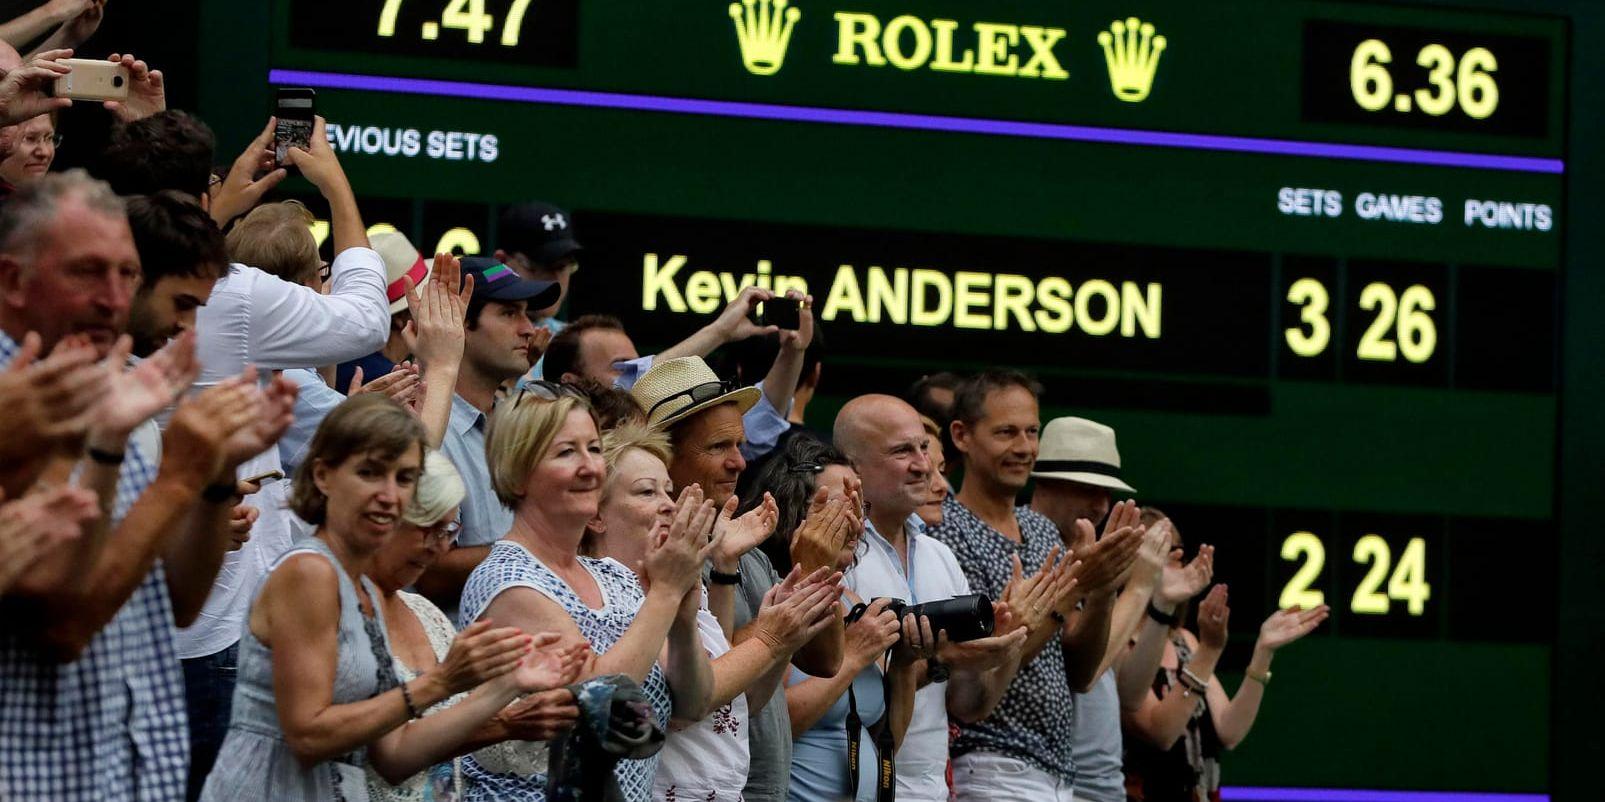 Wimbledon-matcher ska inte kunna sluta 26–24 i avgörande set, som sommarens semfinal mellan Kevin Andersson och John Isner. Från nästa års införs tiebreak efter 12–12 i avgörande set.